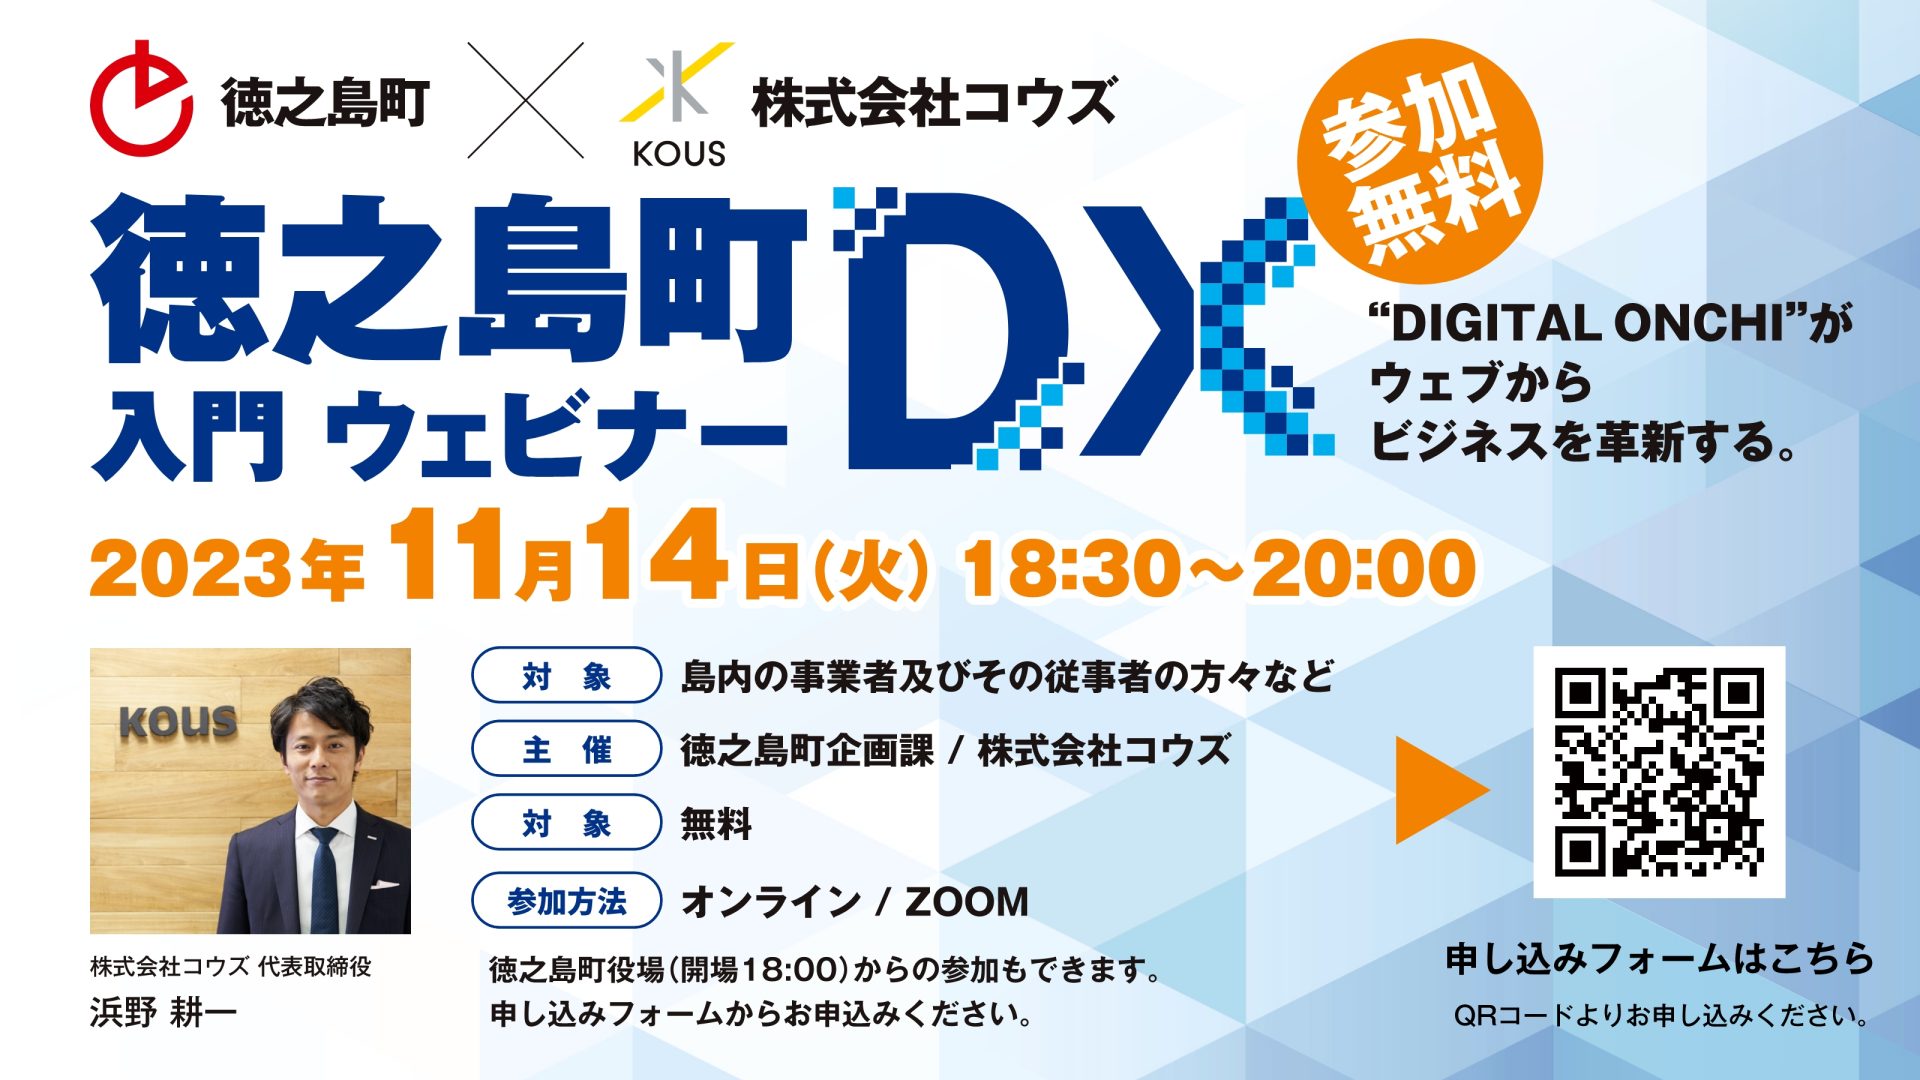 徳之島町DX入門ウェビナーを開催いたします